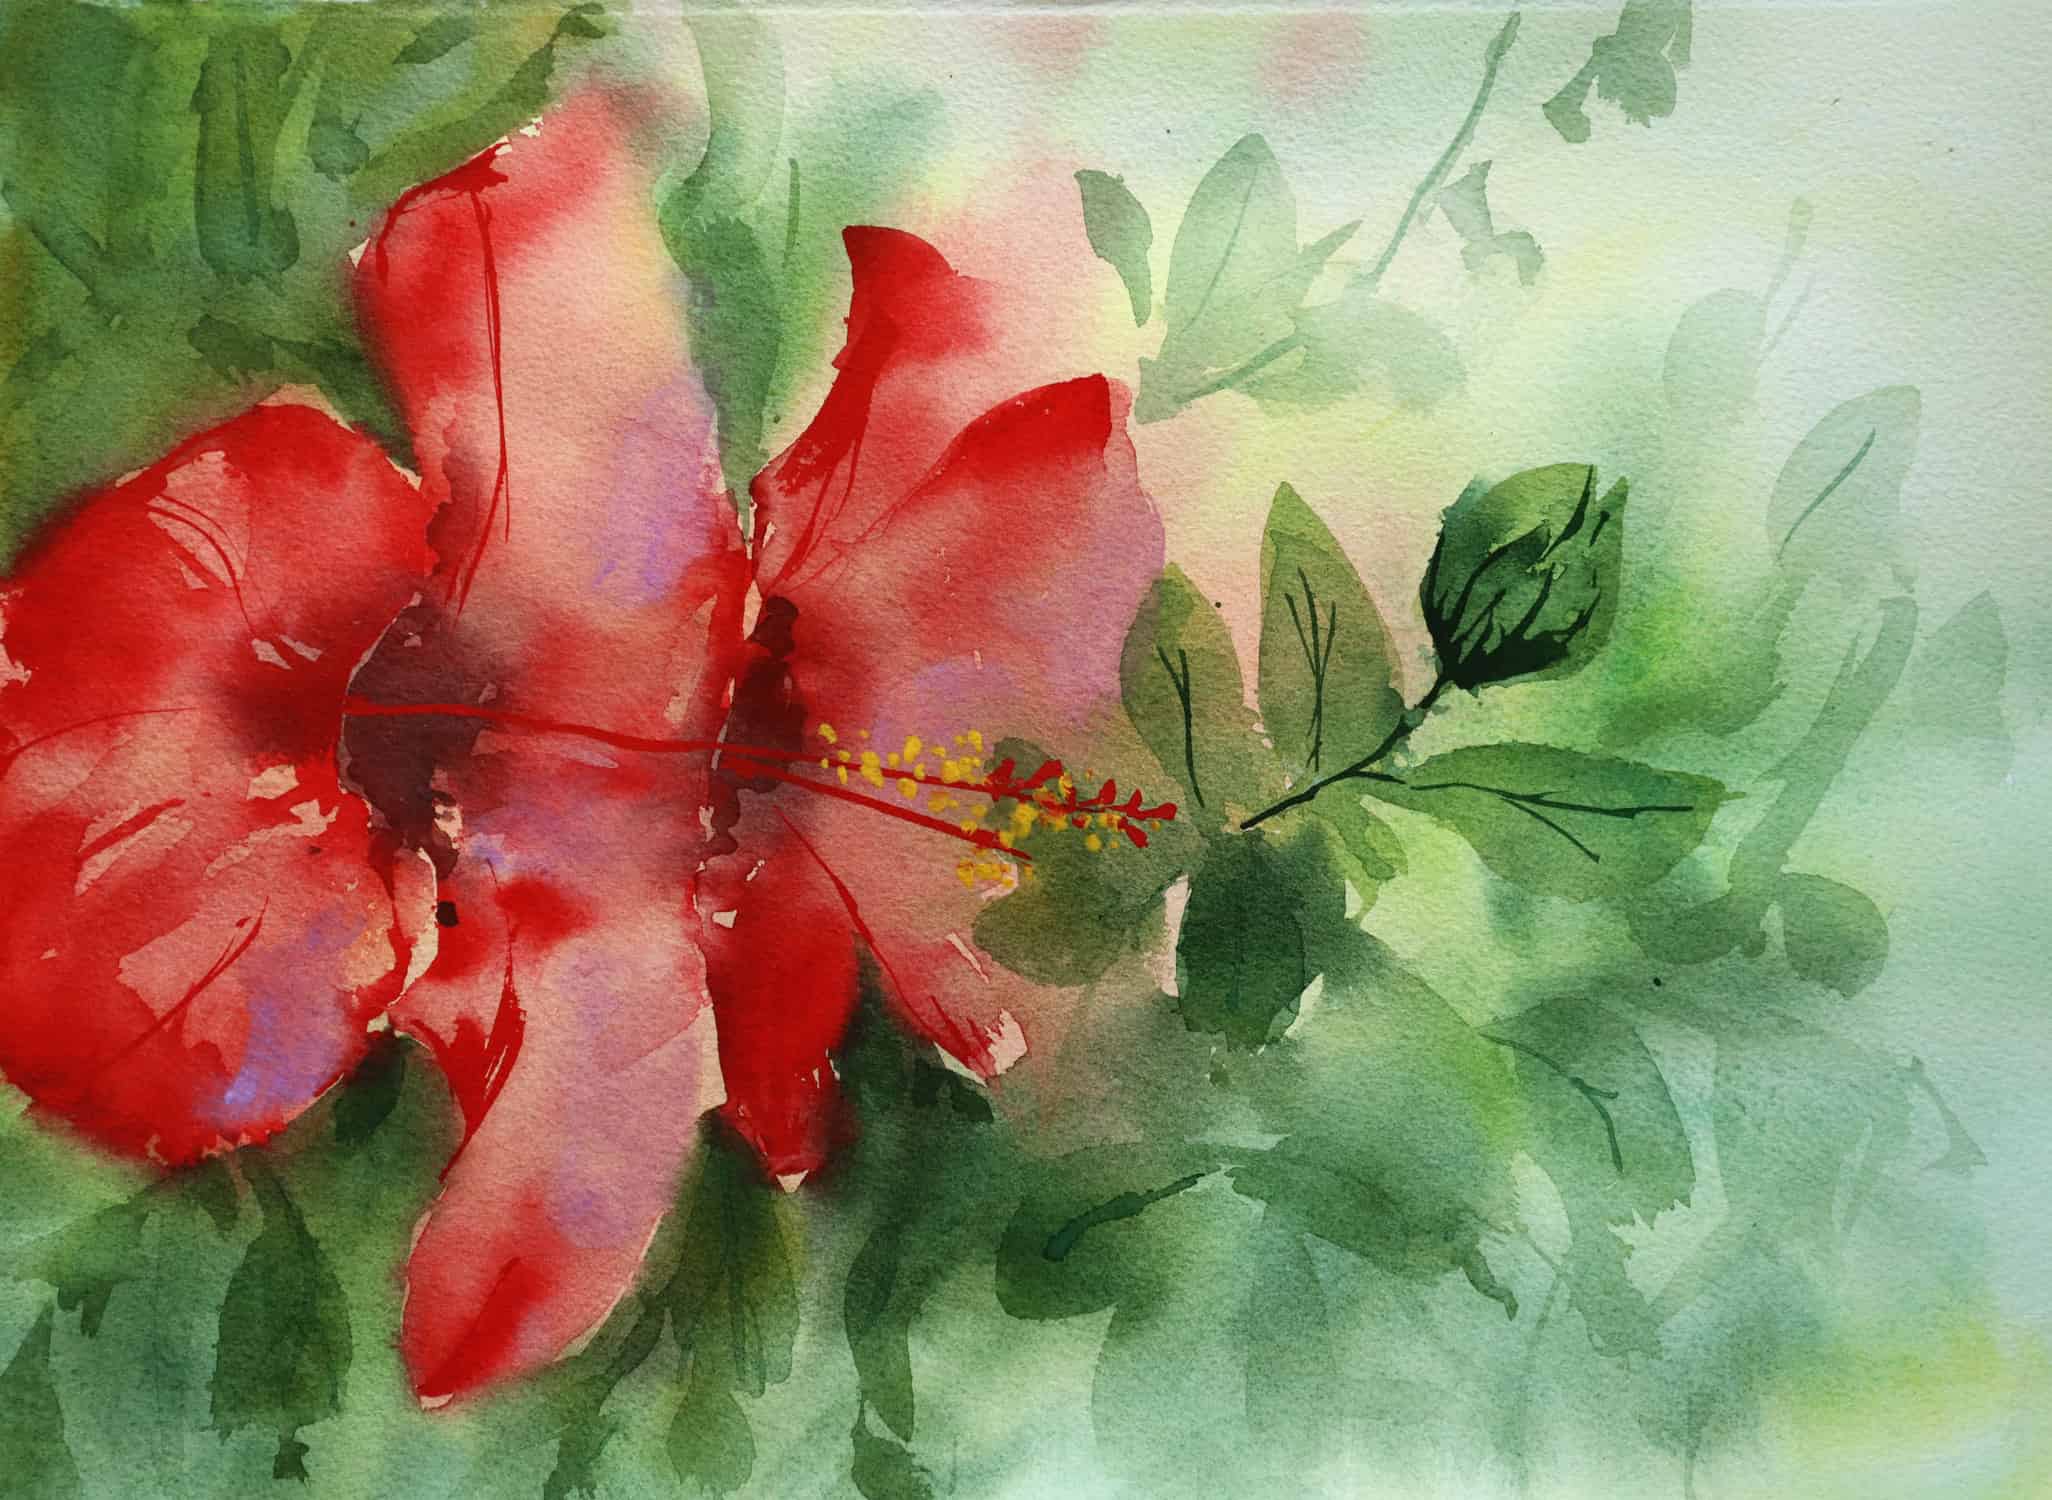 Painting an hibiscus in watercolor - Ursula Schichan